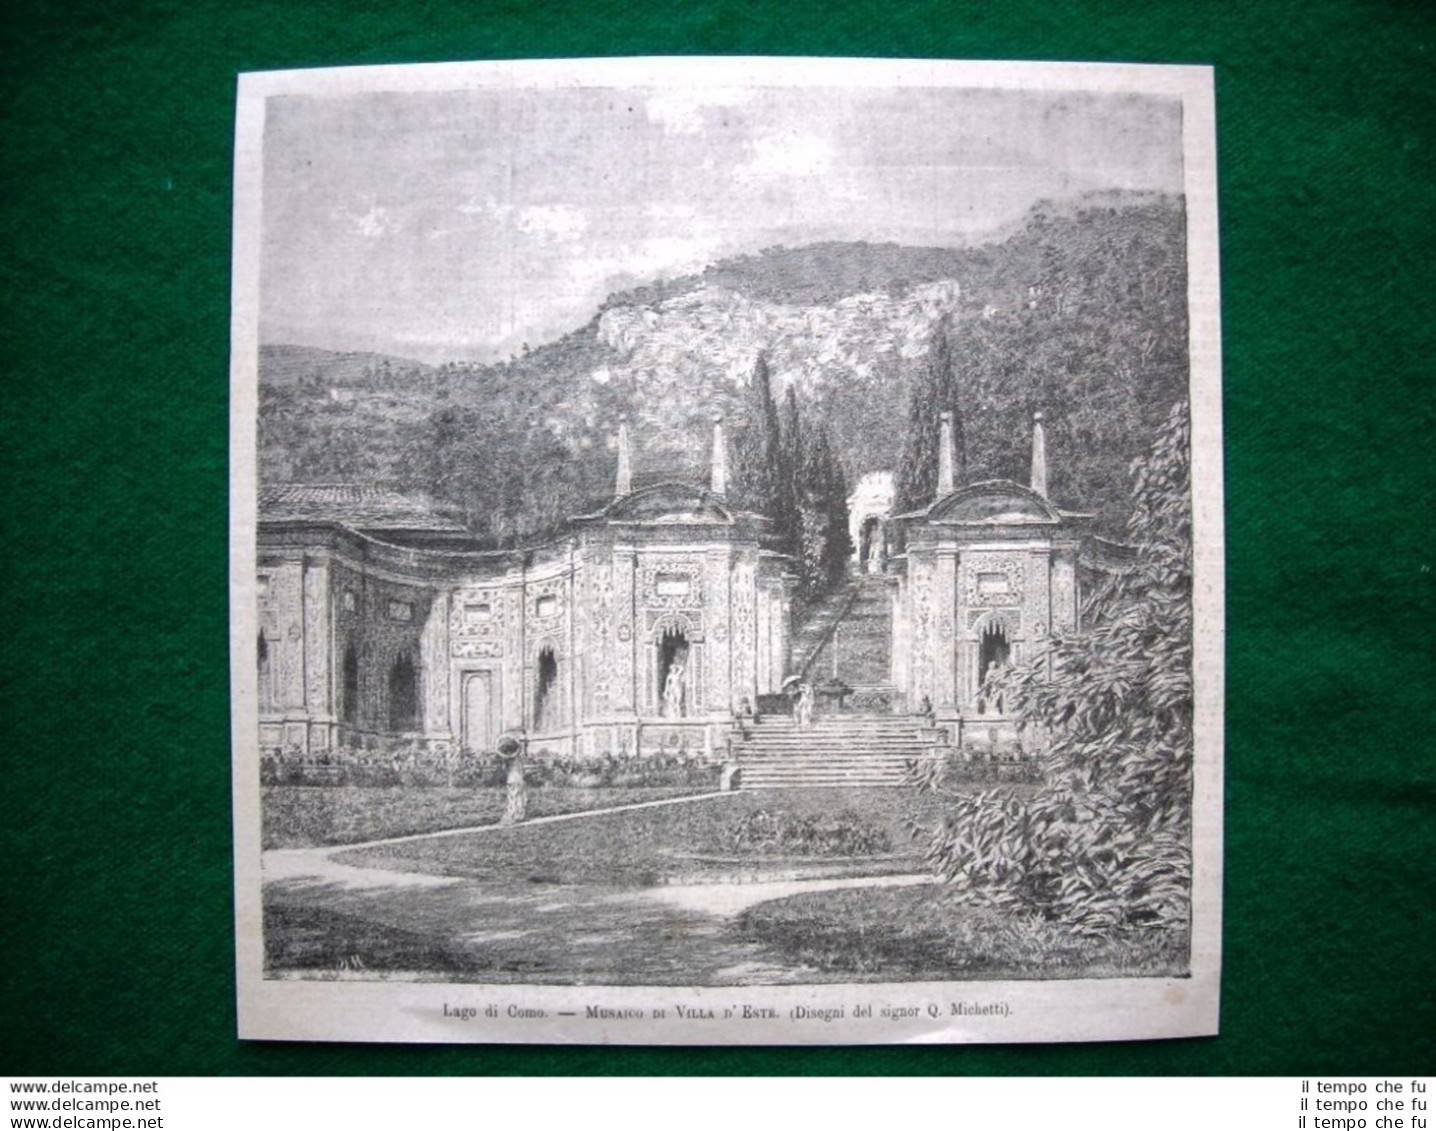 Lago Di Como Nel 1882 - Mosaico Di Villa D'Este (disegni Del Signor Q. Michetti) - Before 1900